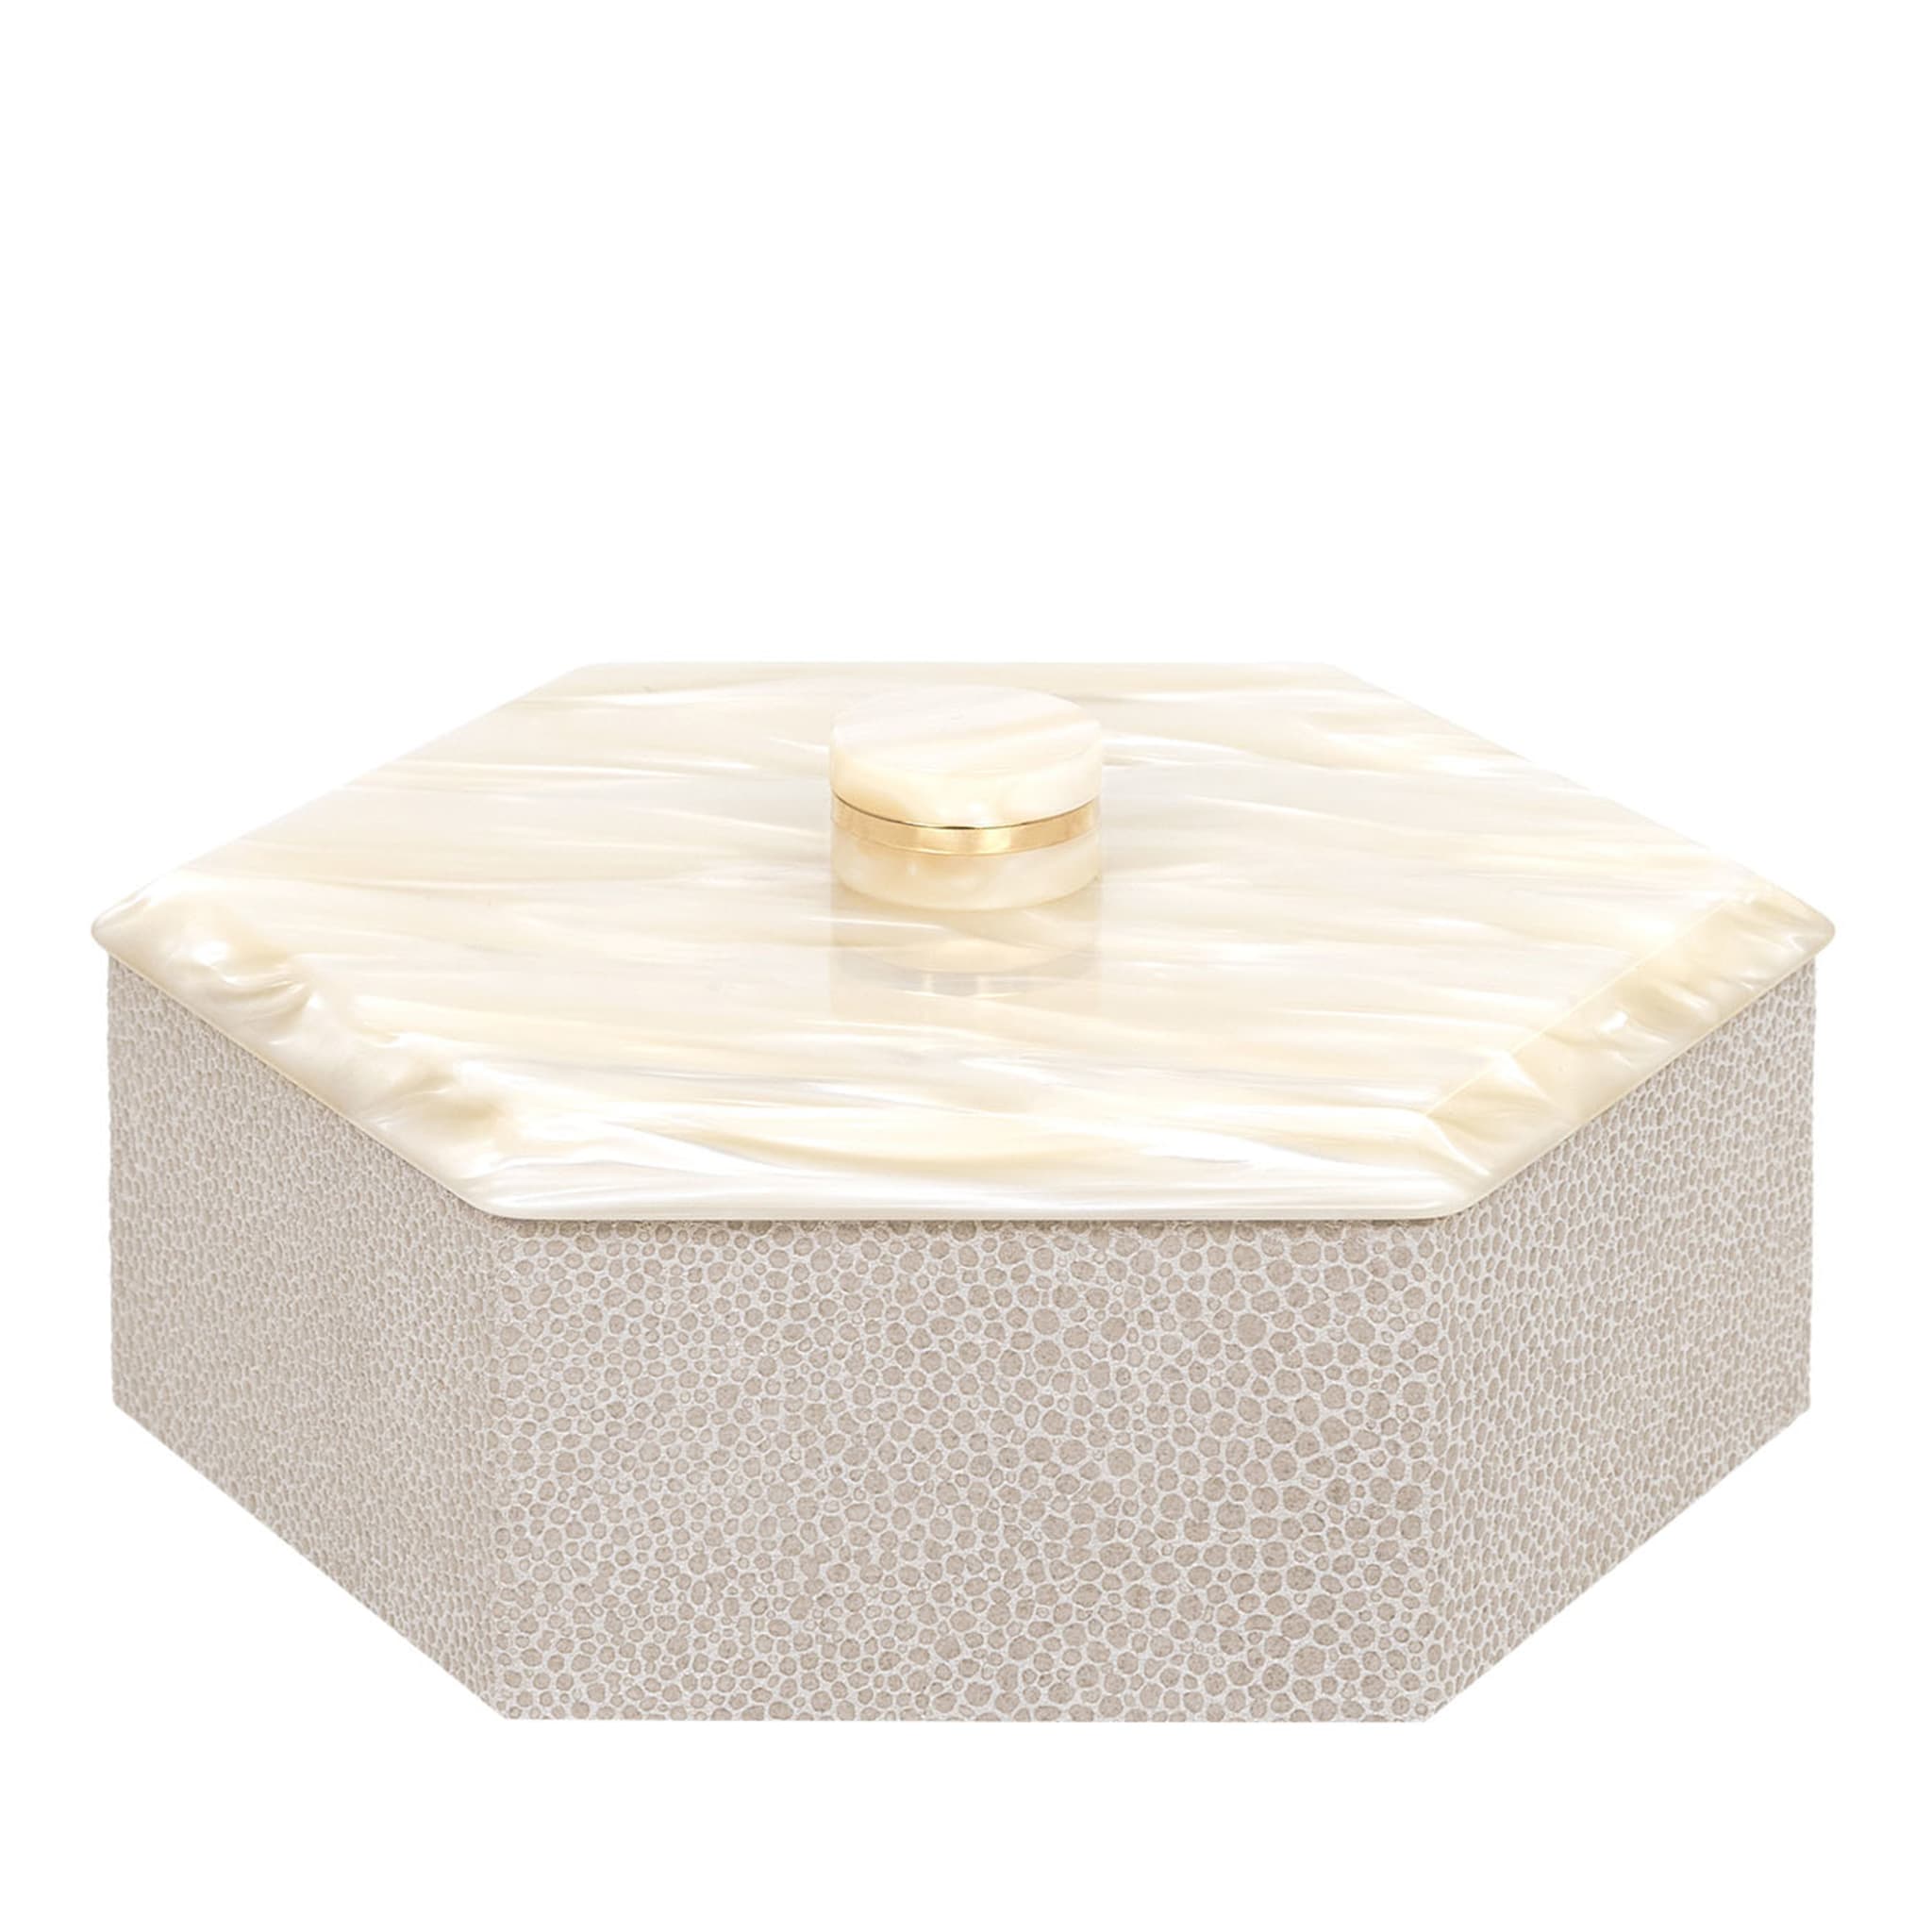 Kelly Low Petite boîte à crème hexagonale avec couvercle - Vue principale